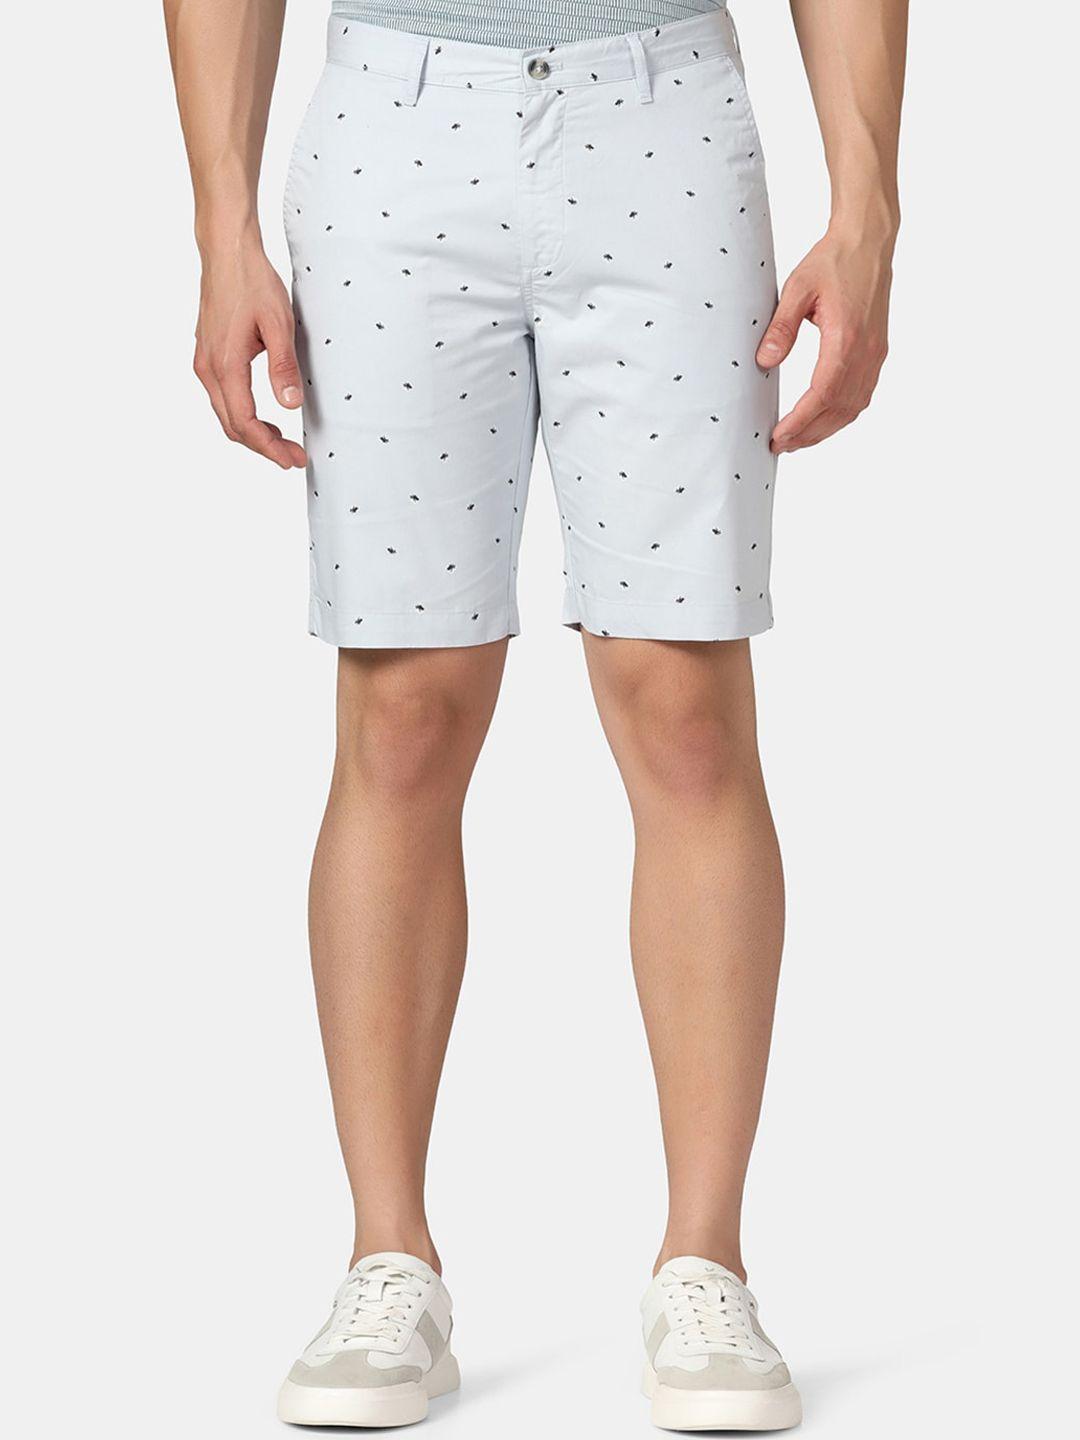 blackberrys men conversational printed slim fit pure cotton shorts